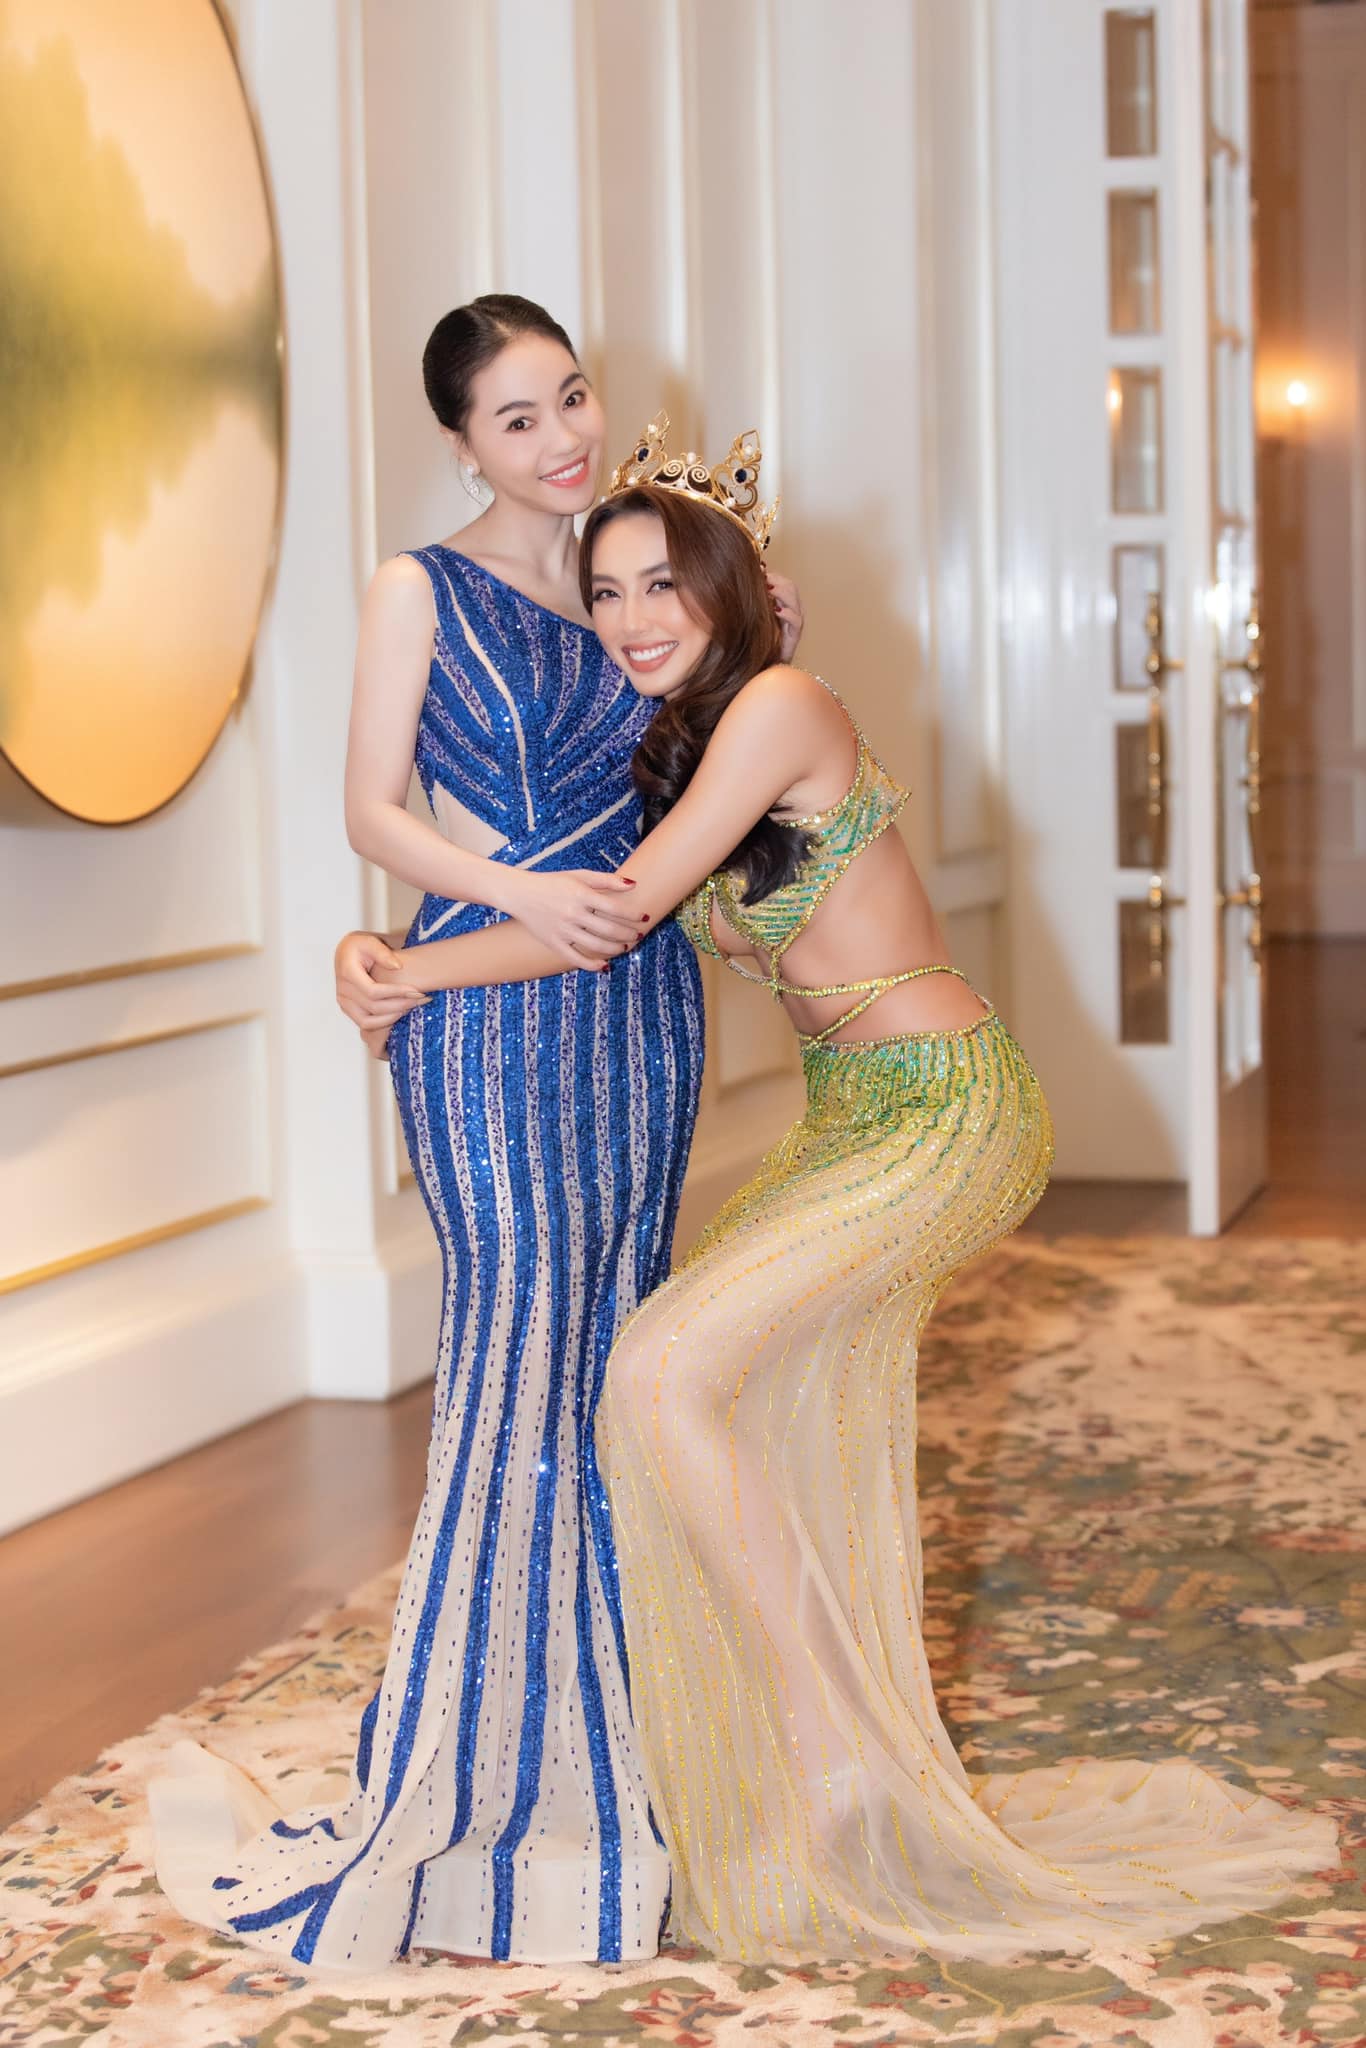 Tân Miss Grand Intarnational 2021 Nguyễn Thúc Thùy Tiên nói gì về kế hoạch sử dụng 40.000 USD tiền thưởng? - Ảnh 2.